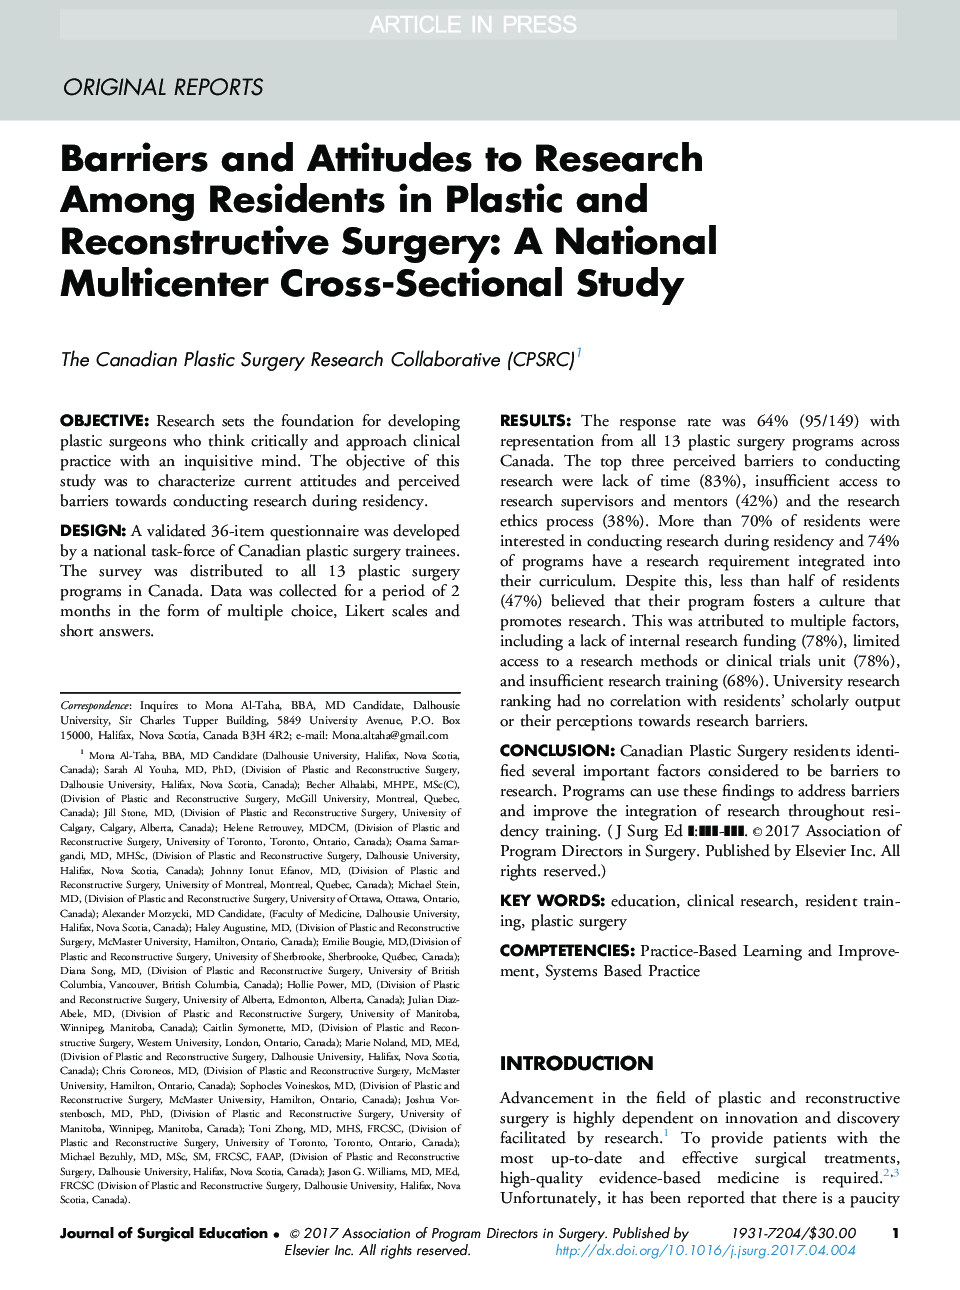 موانع و نگرش به تحقیق در میان ساکنان جراحی پلاستیک و مجدد: مطالعه متقاطع ملی چند کانونی 